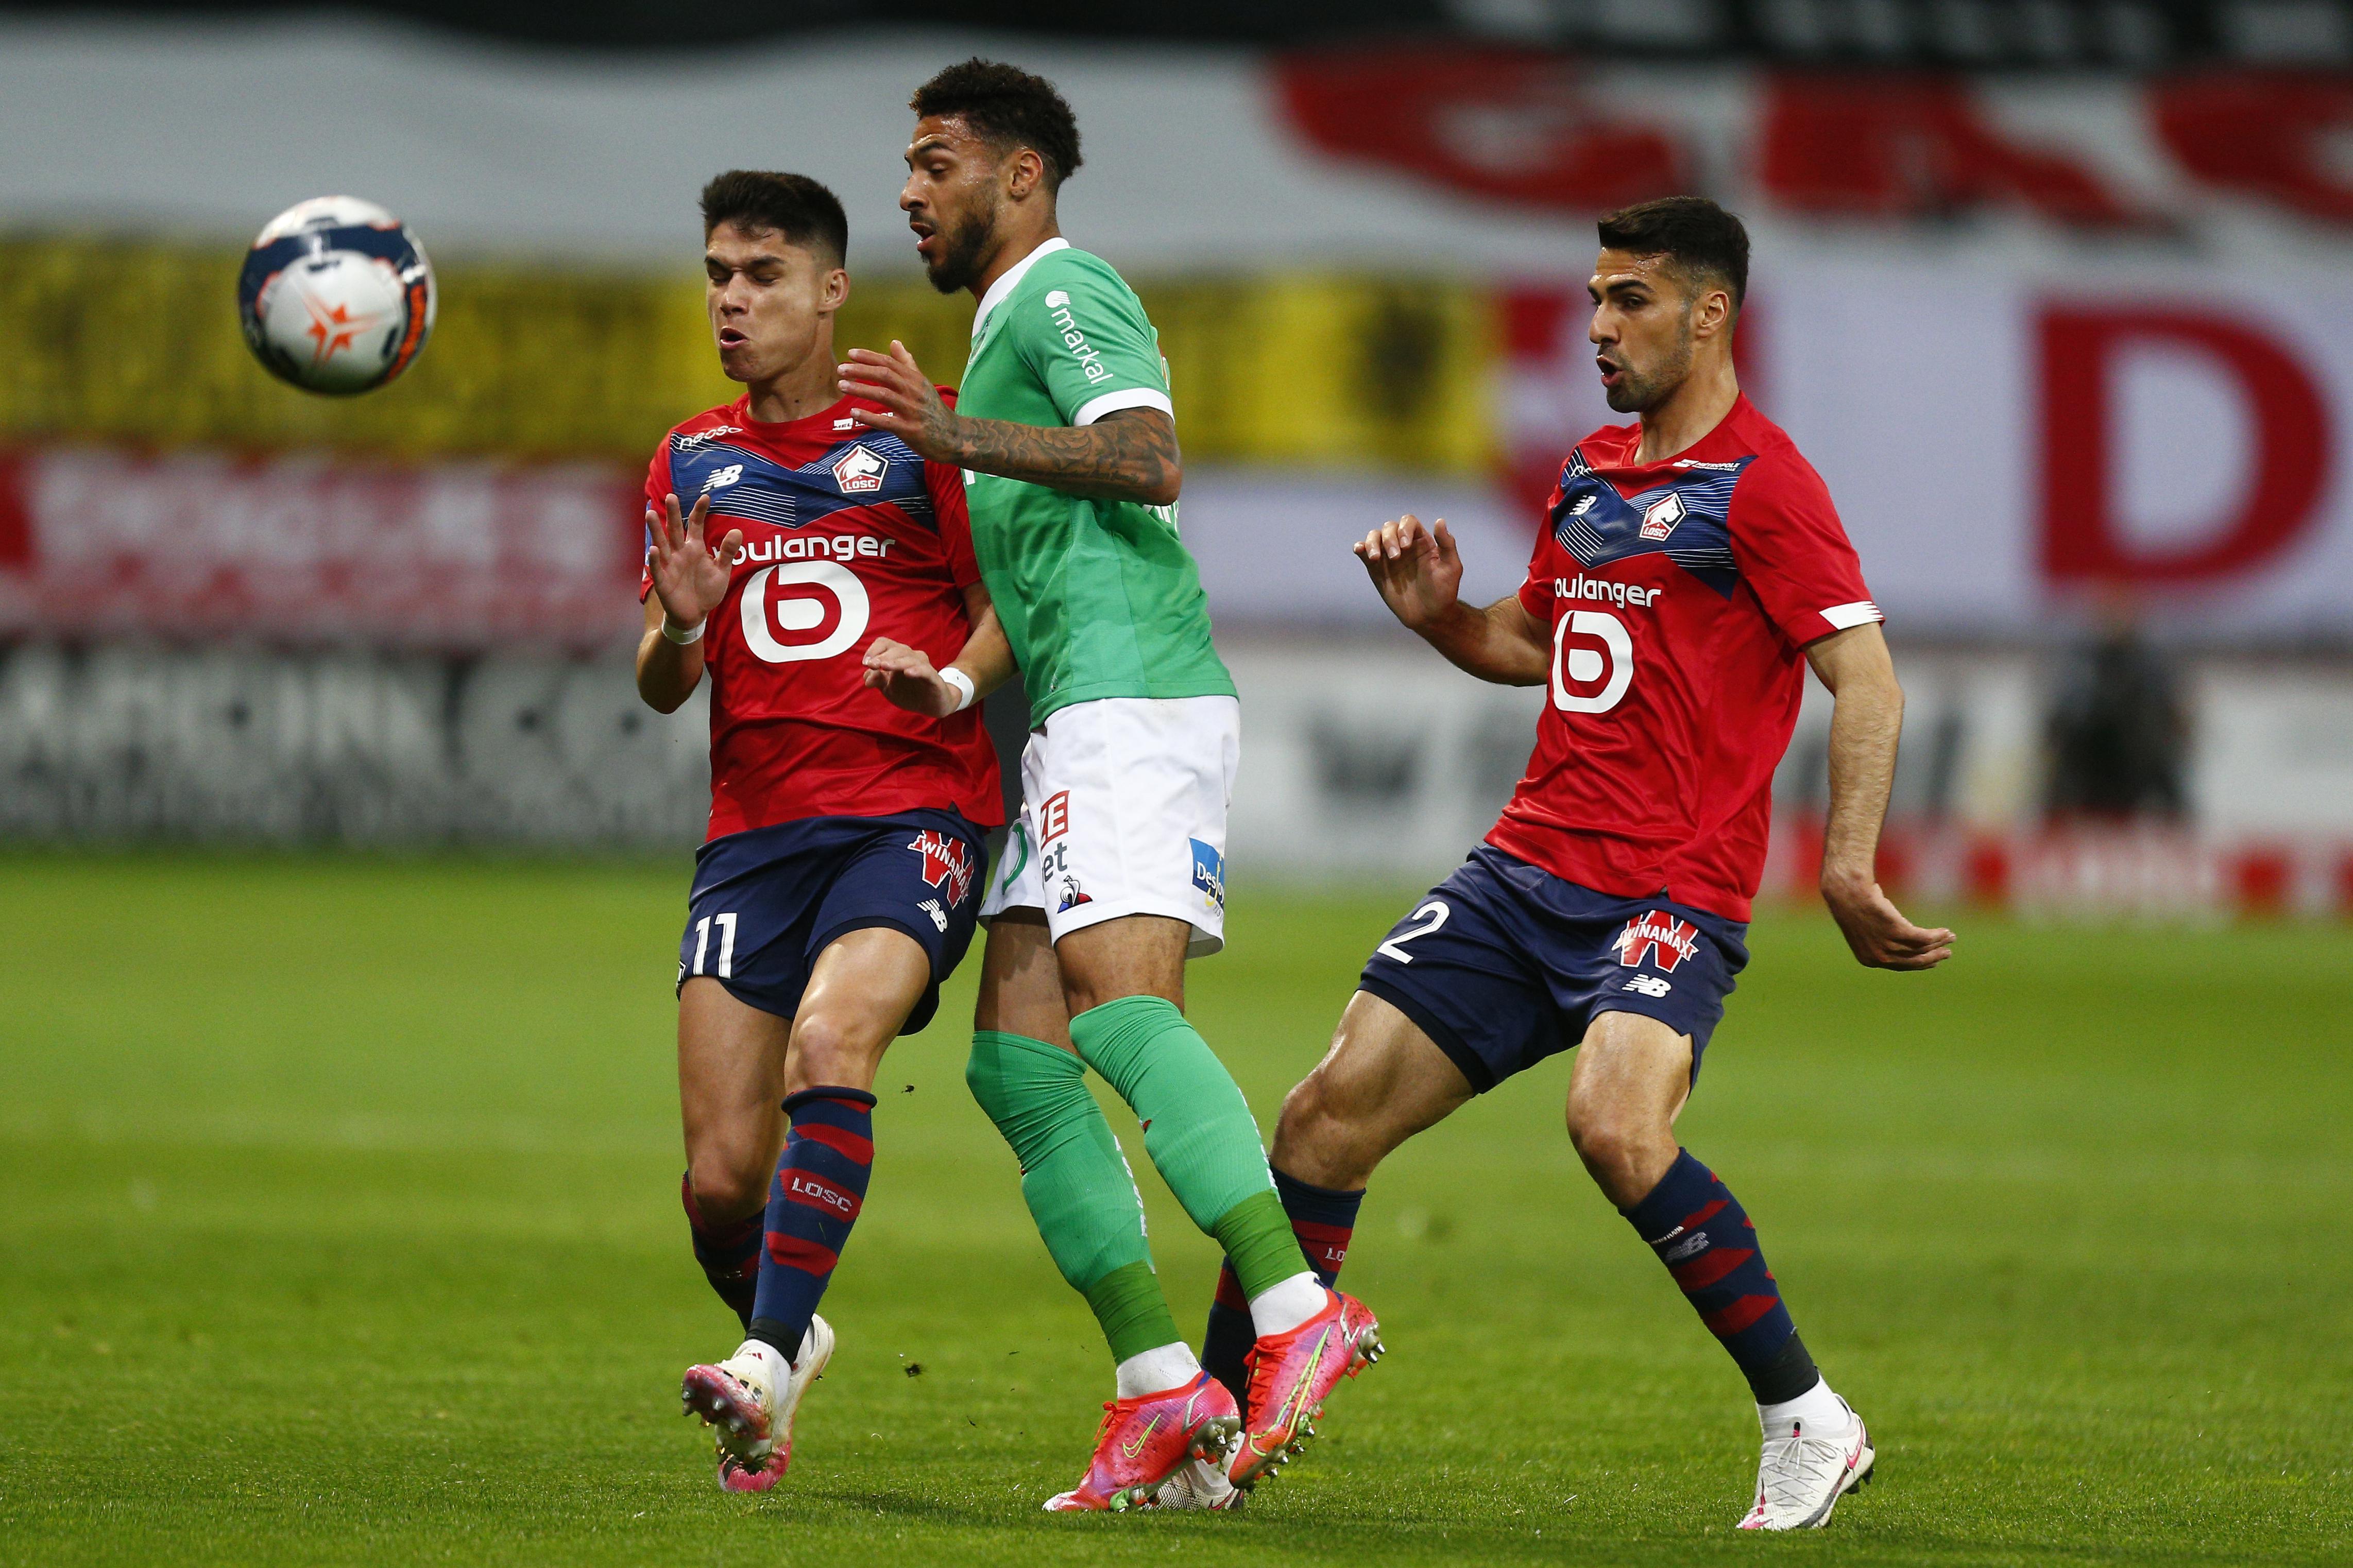 (ÖZET) Lille - Saint-Etienne maç sonucu: 0-0